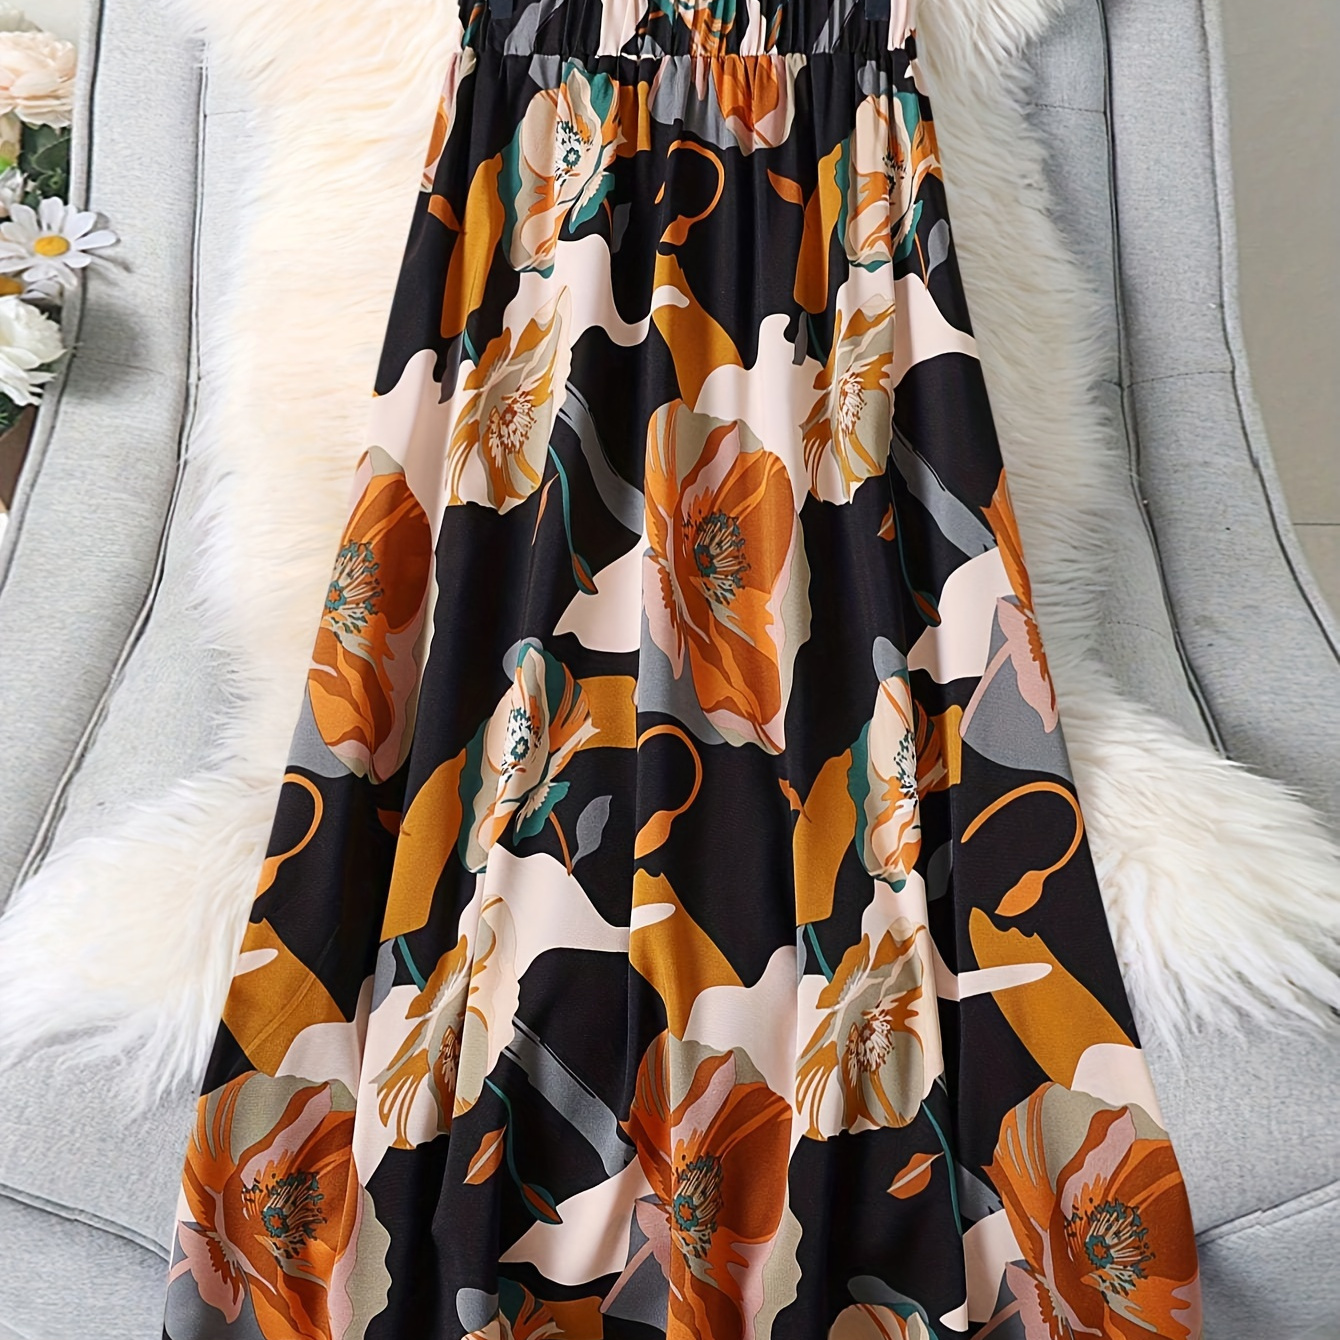 

Floral Print Elastic Waist Skirt, Elegant Ruffle Hem Swing Skirt For Spring & Summer, Women's Clothing